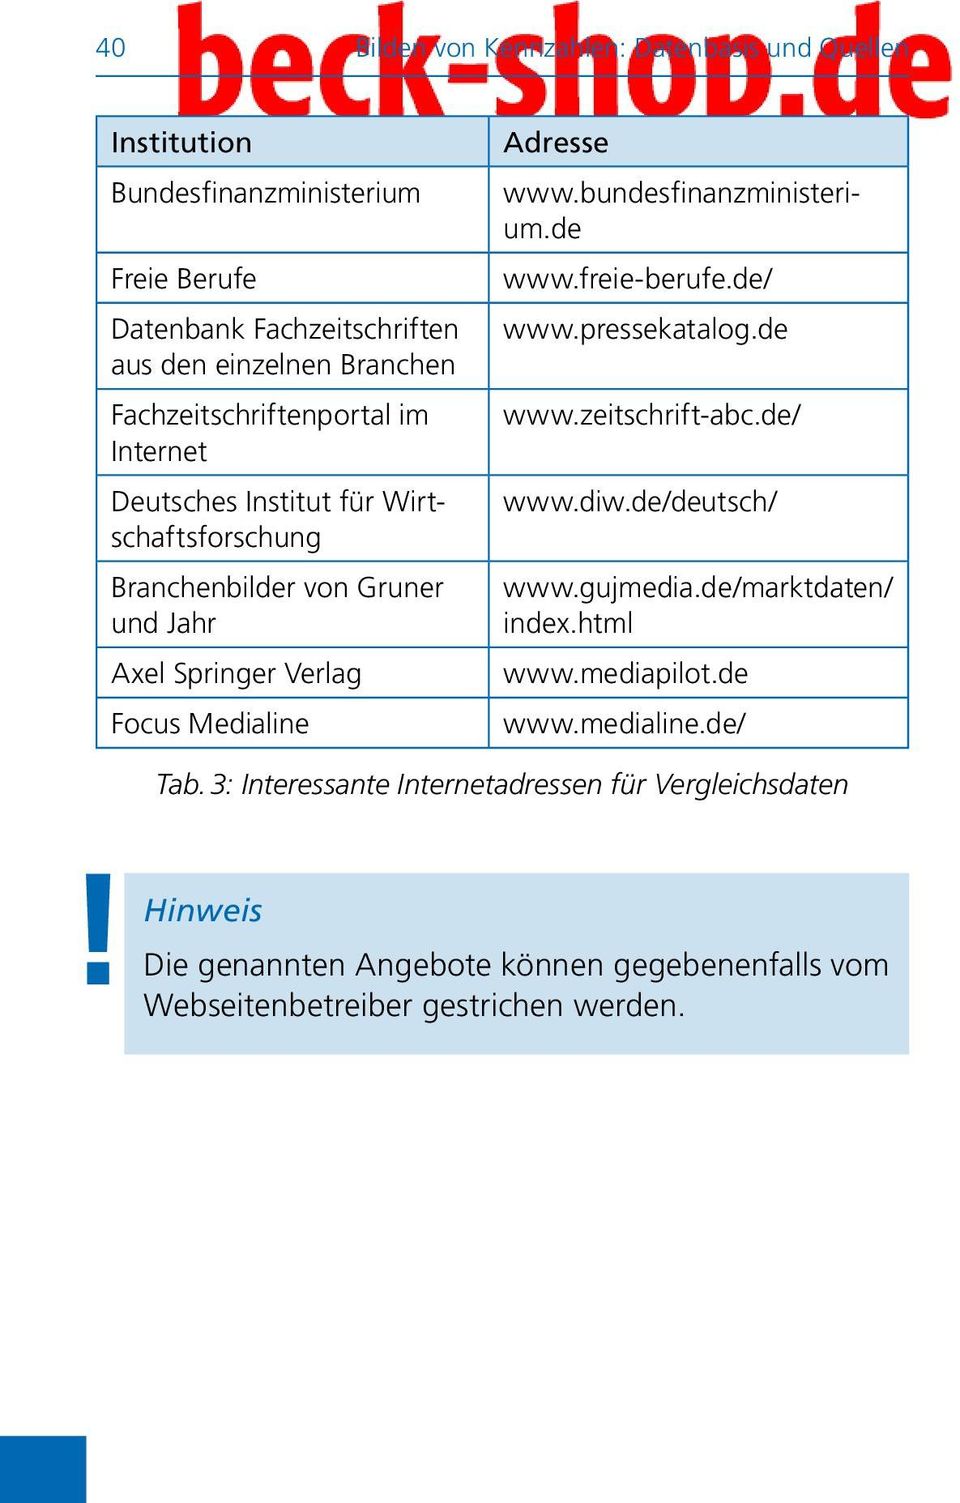 bundesfinanzministerium.de www.freie-berufe.de/ www.pressekatalog.de www.zeitschrift-abc.de/ www.diw.de/deutsch/ www.gujmedia.de/marktdaten/ index.html www.